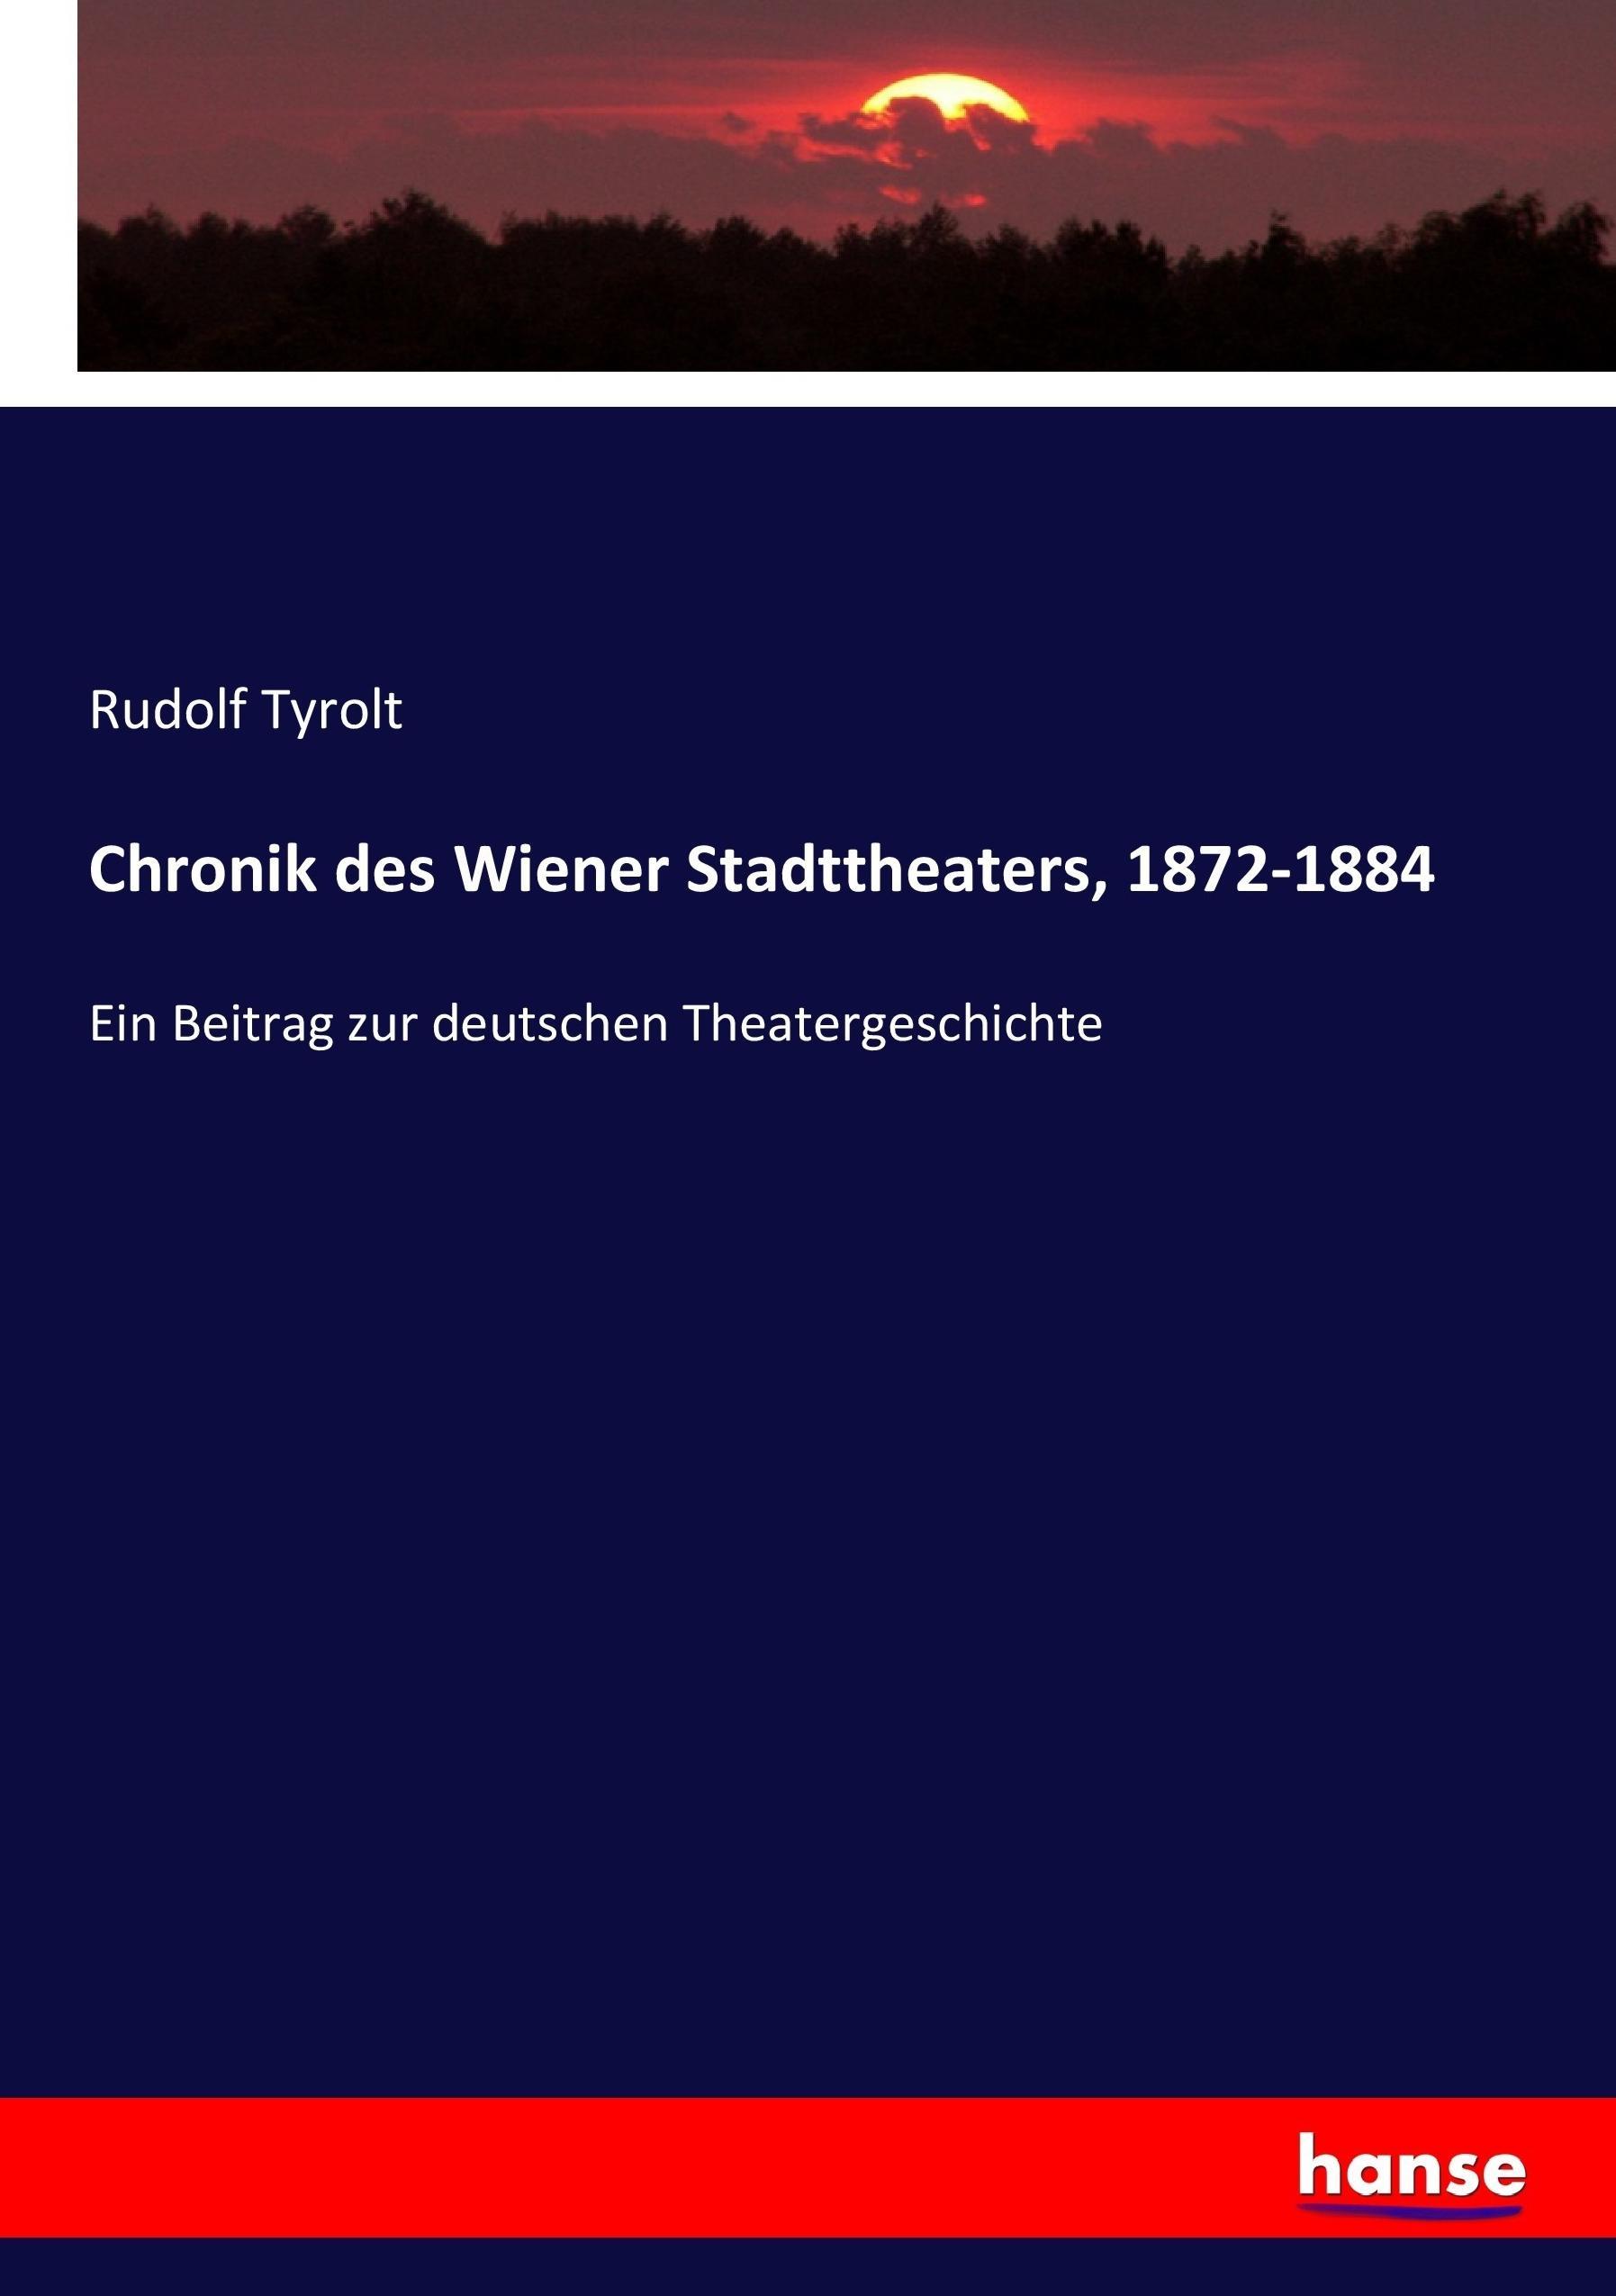 Chronik des Wiener Stadttheaters, 1872-1884 | Ein Beitrag zur deutschen Theatergeschichte | Rudolf Tyrolt | Taschenbuch | Paperback | 292 S. | Deutsch | 2017 | hansebooks | EAN 9783743670808 - Tyrolt, Rudolf